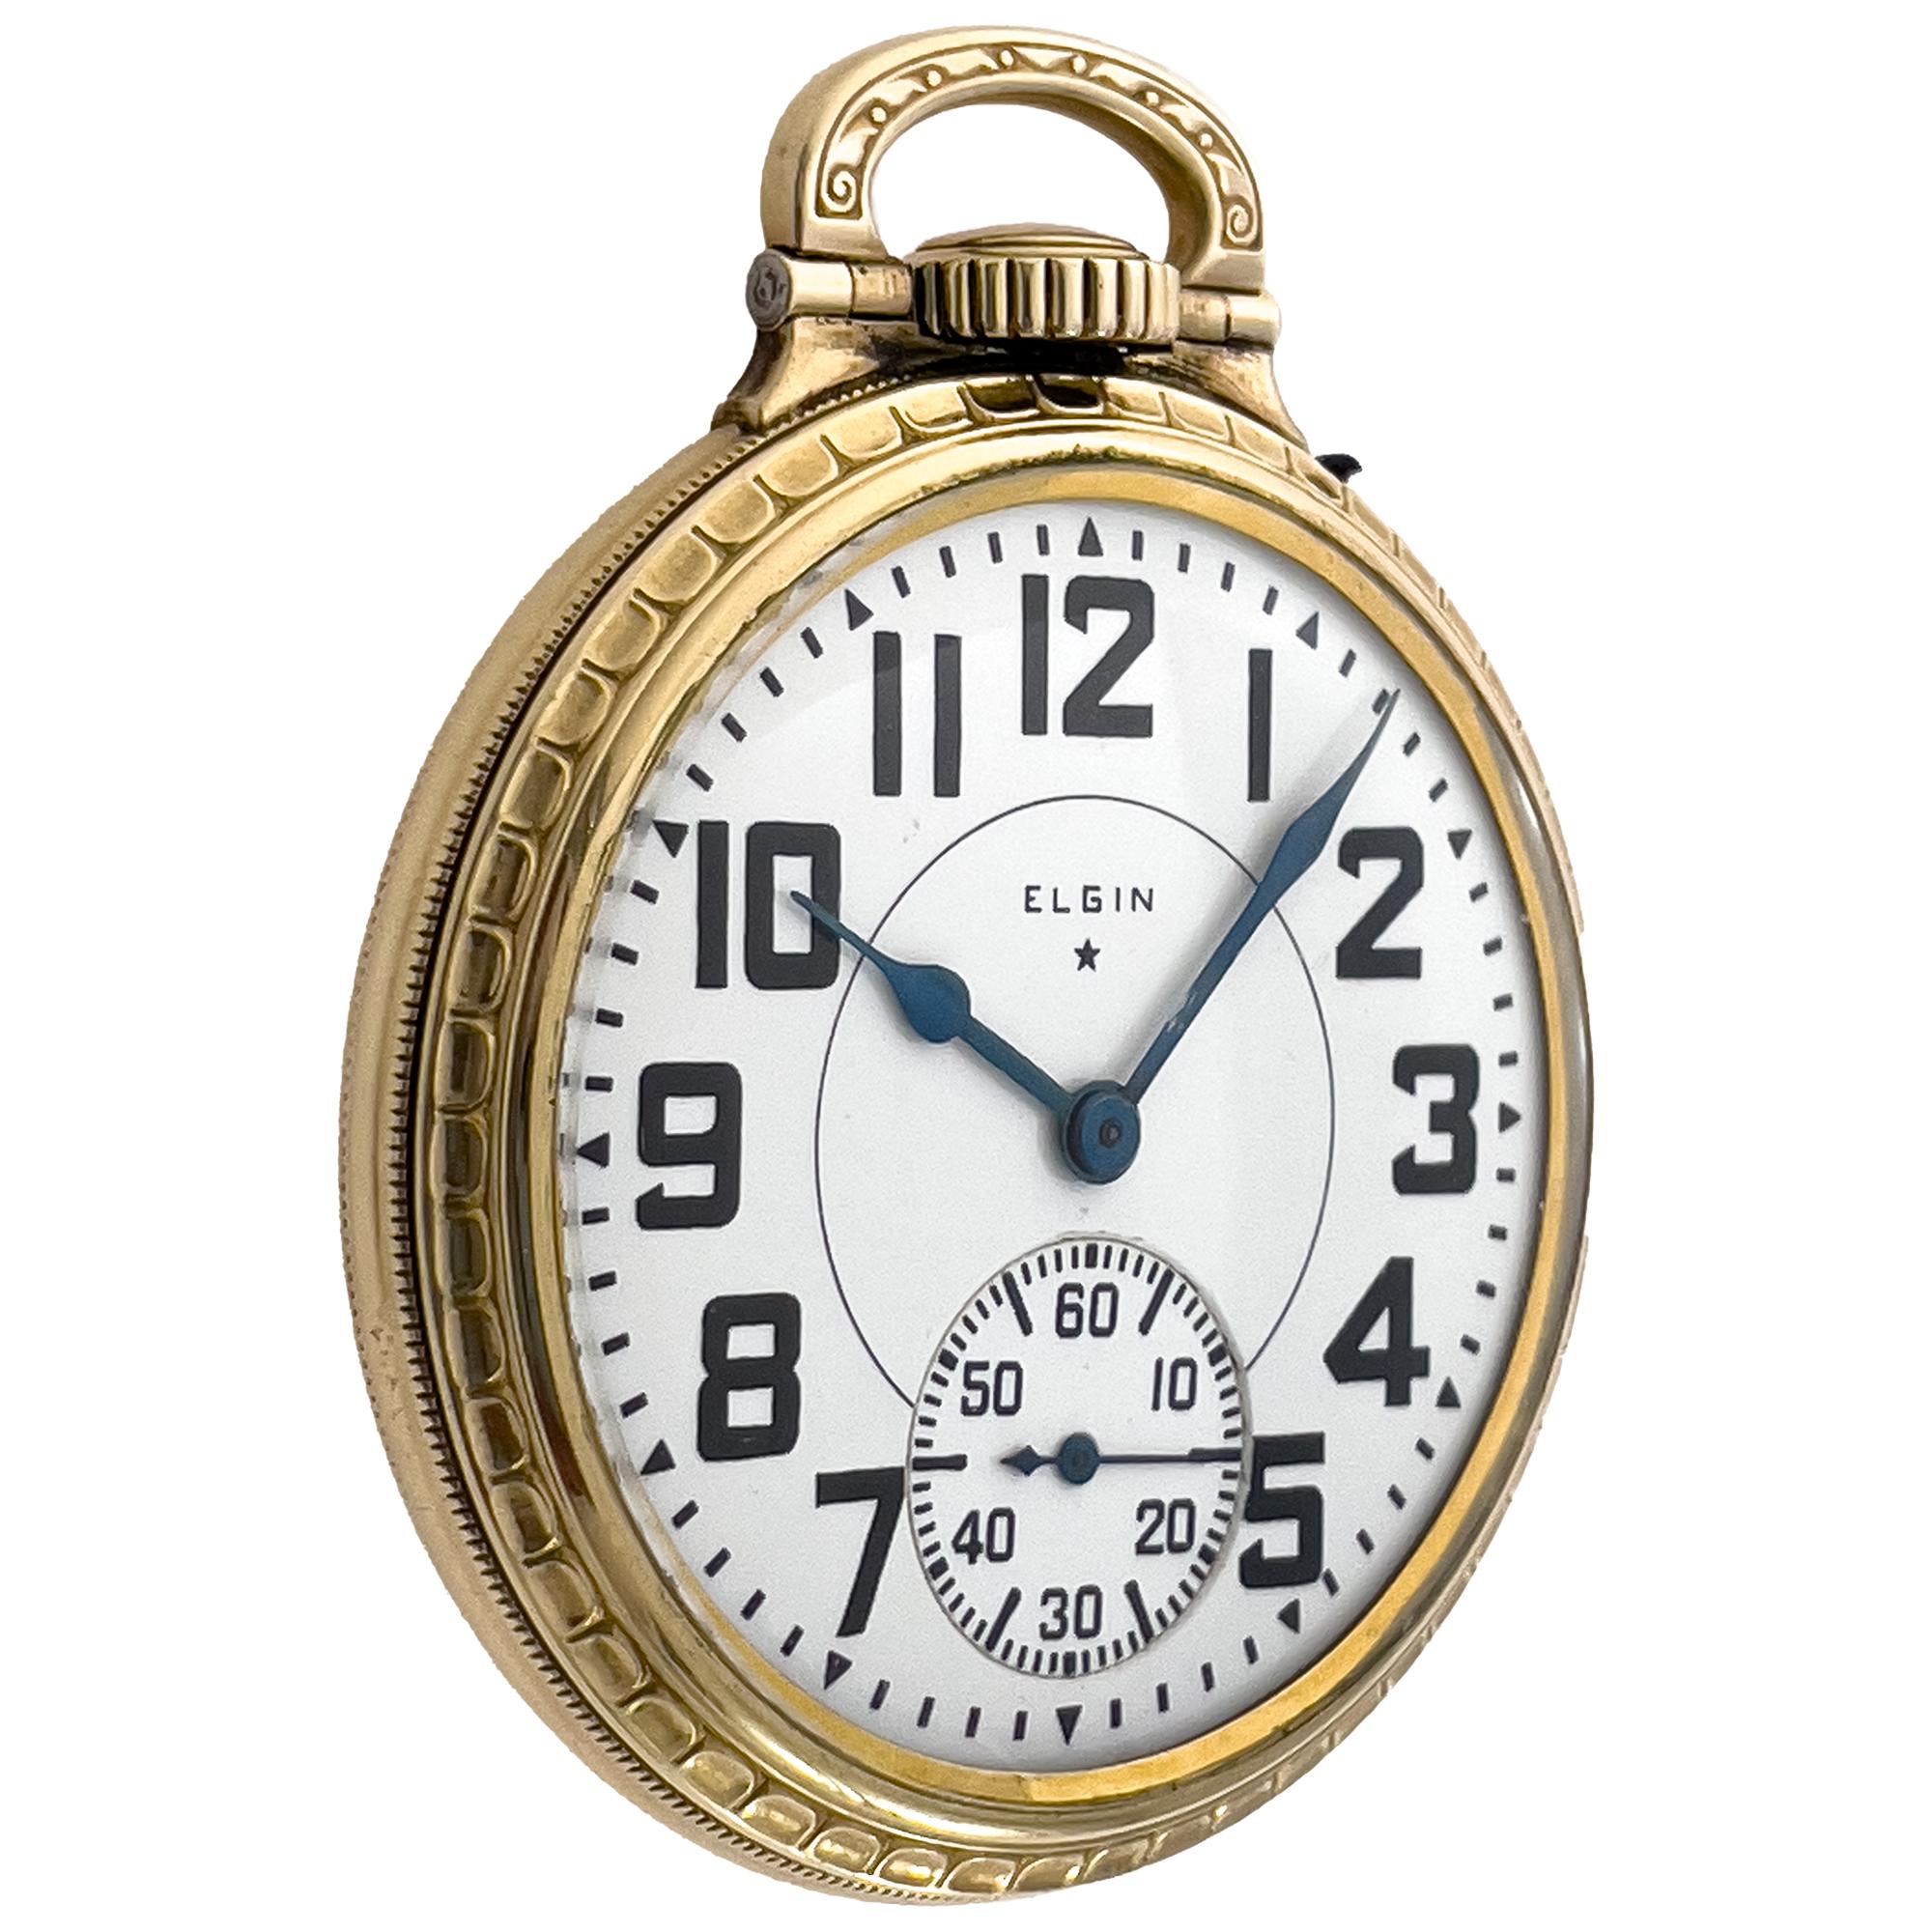 Elgin National Watch Company B.W. Raymond mit Goldfüllung. Handbuch. 16 Größe/50 mm Gehäusegröße. 21 Jewels 5 eingestellte Positionen. Gehäuse signiert 